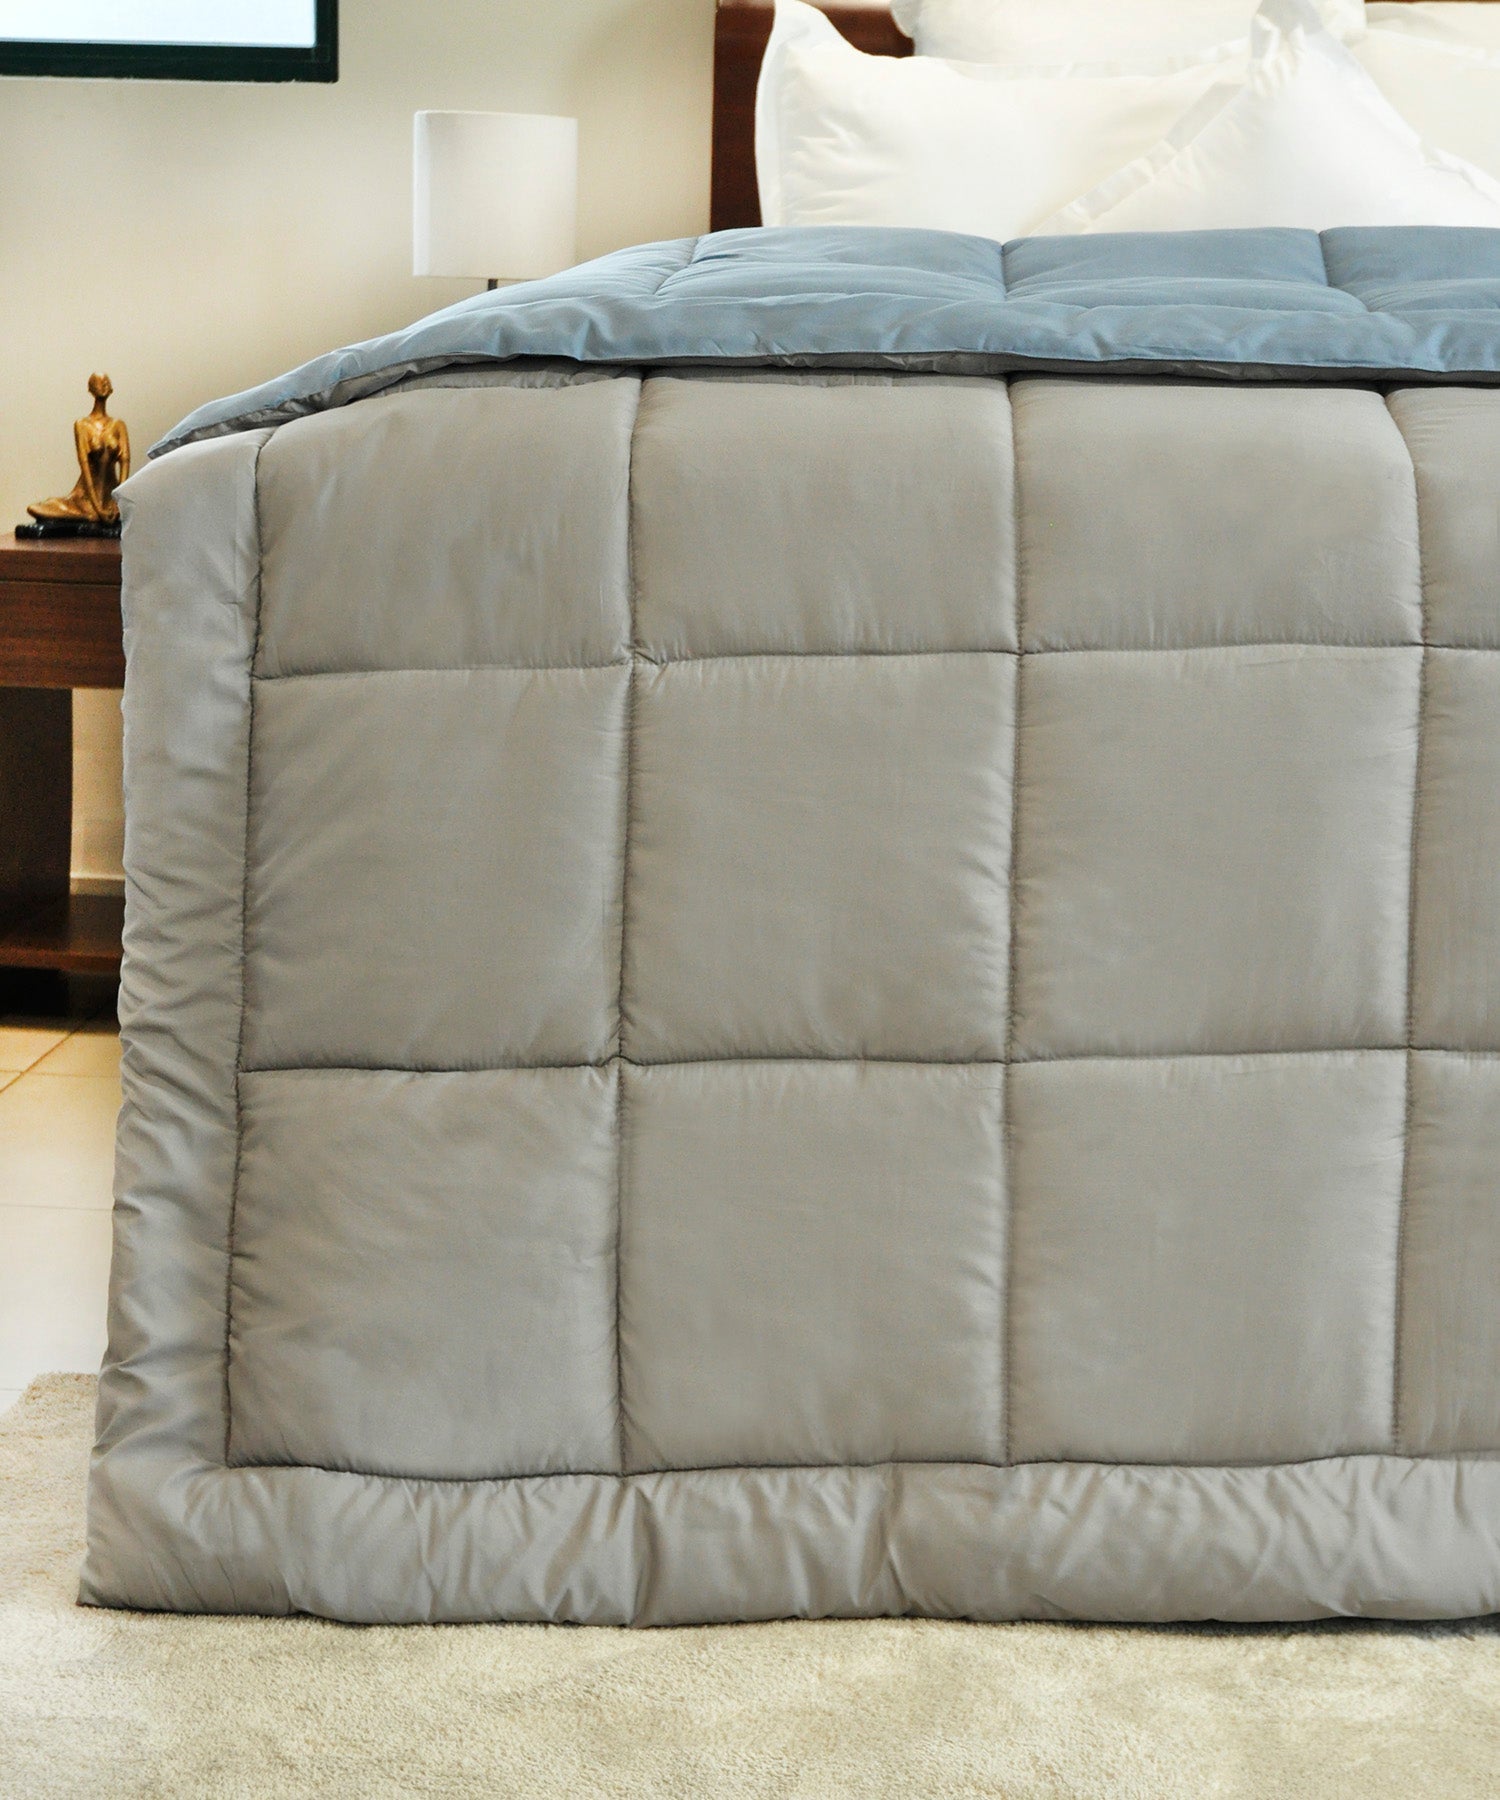 Queen Comforter ₹1799/-